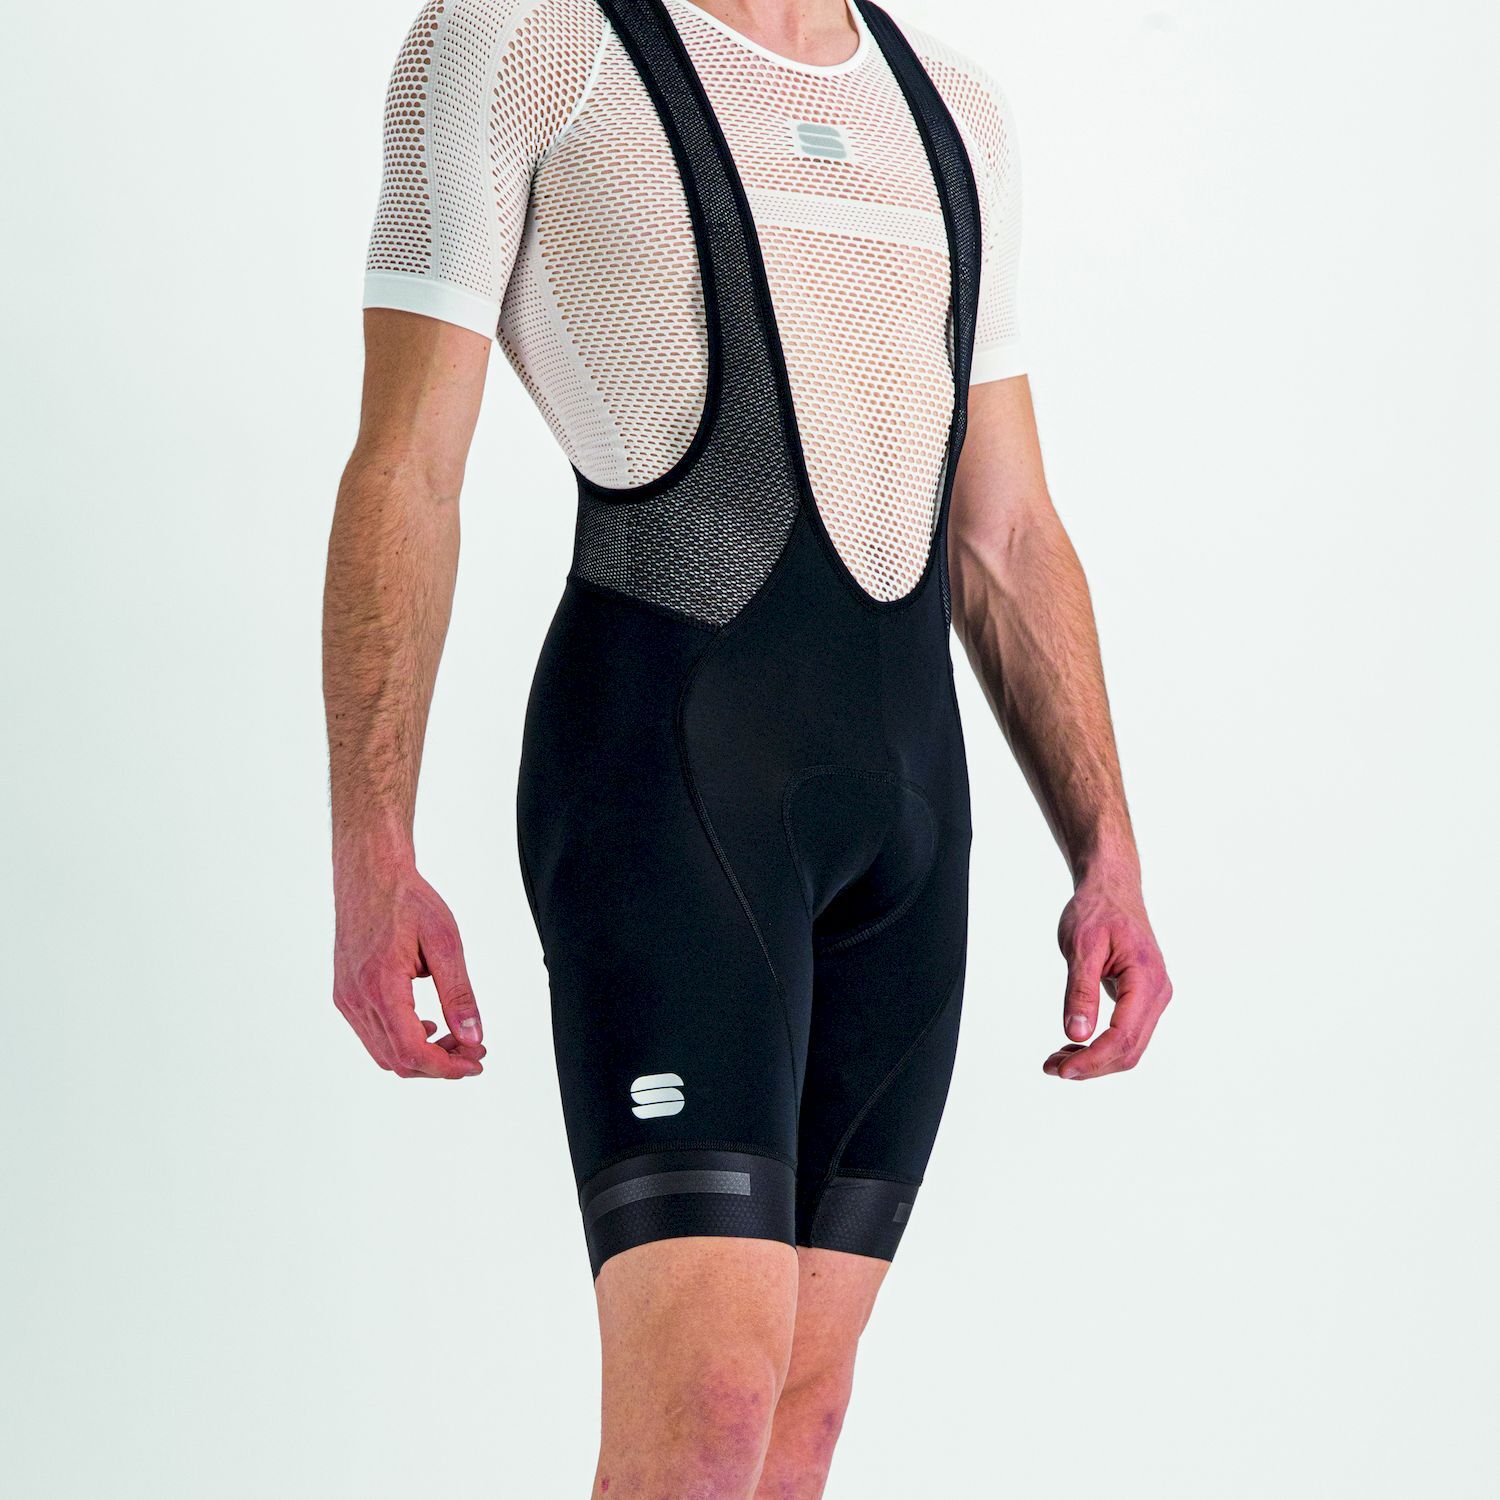 Sportful Neo - Cycling shorts - Men's